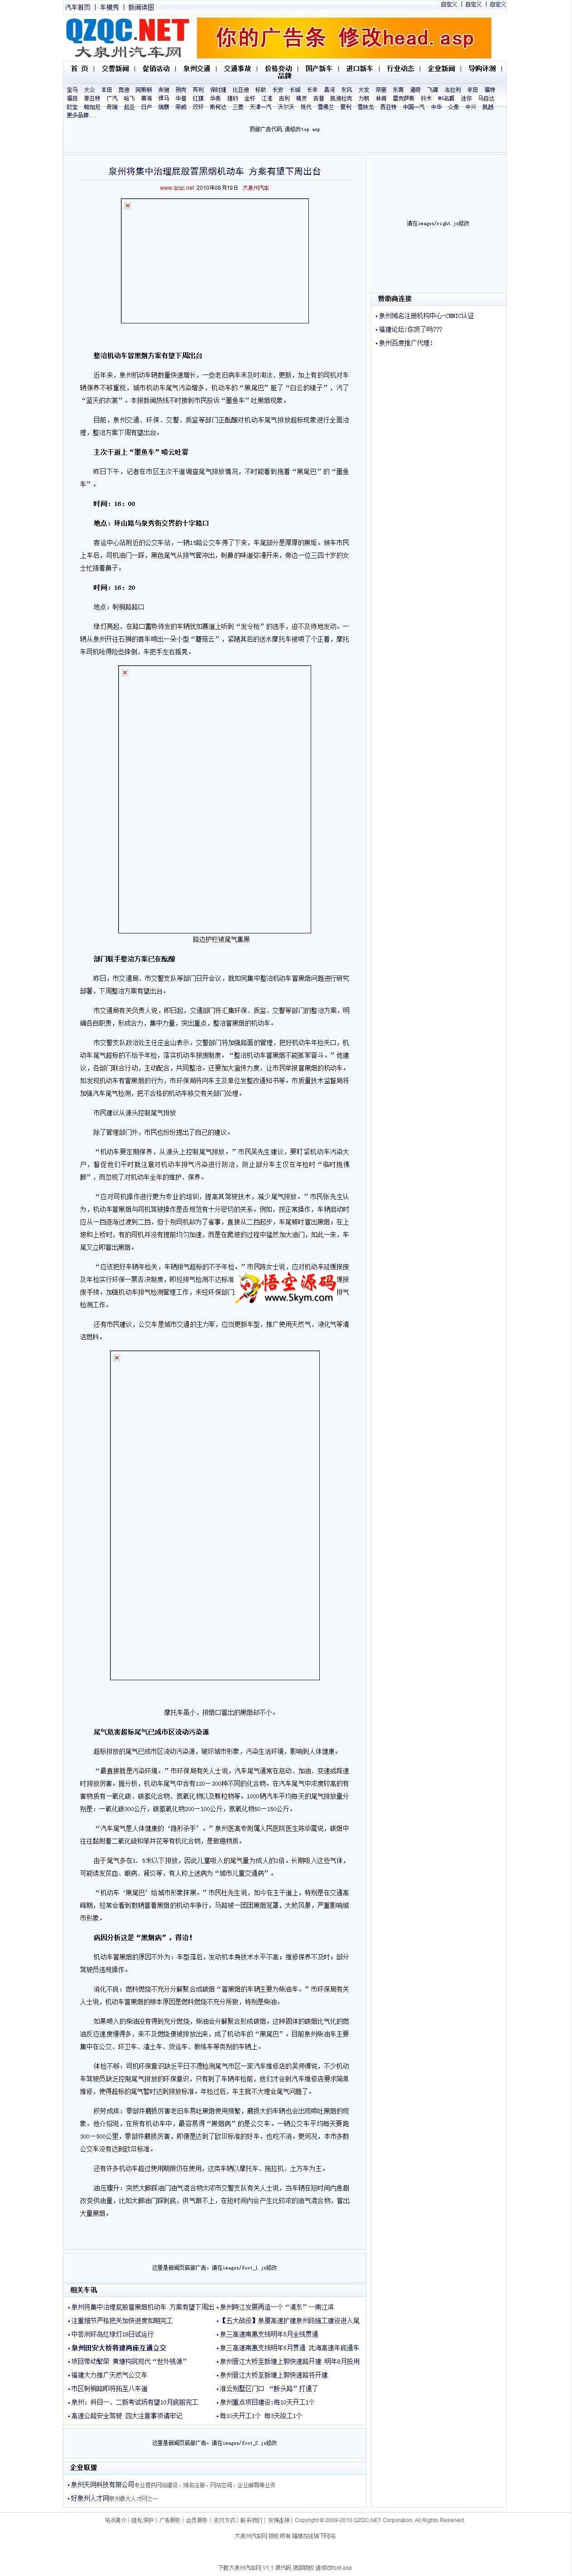 大泉州汽车网整站小偷程序 v2013 1.5